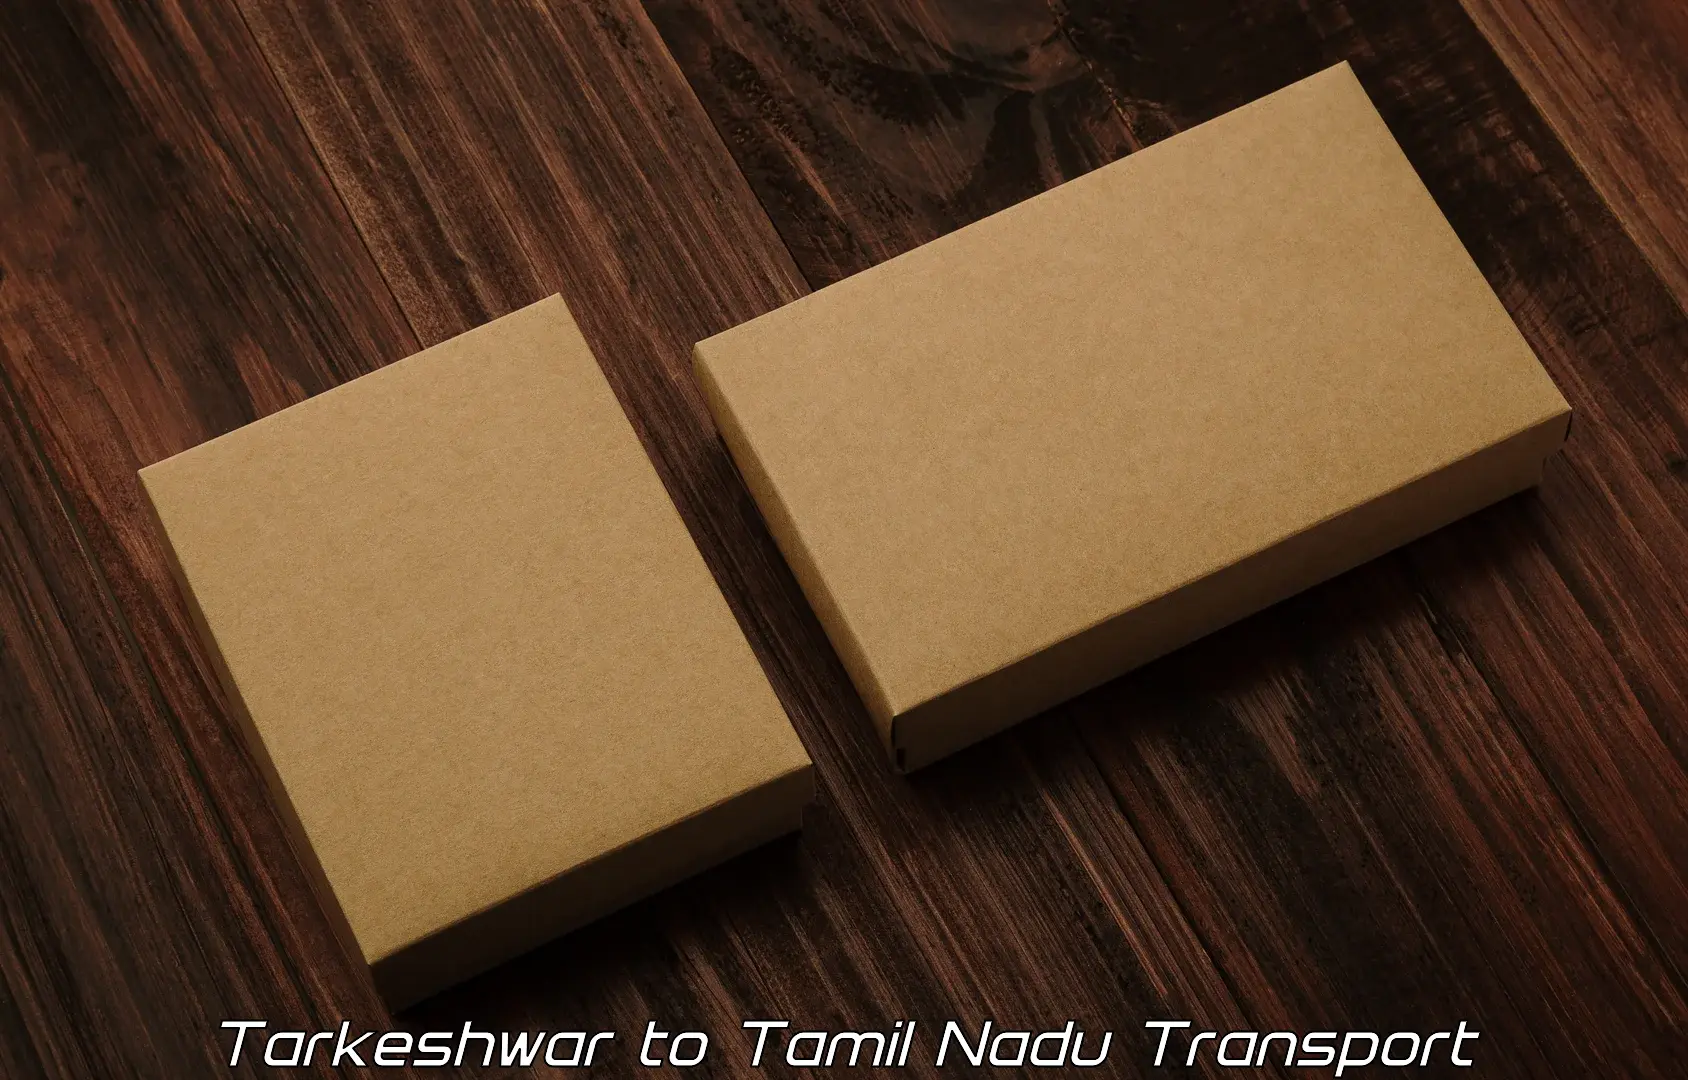 Shipping partner Tarkeshwar to Viluppuram